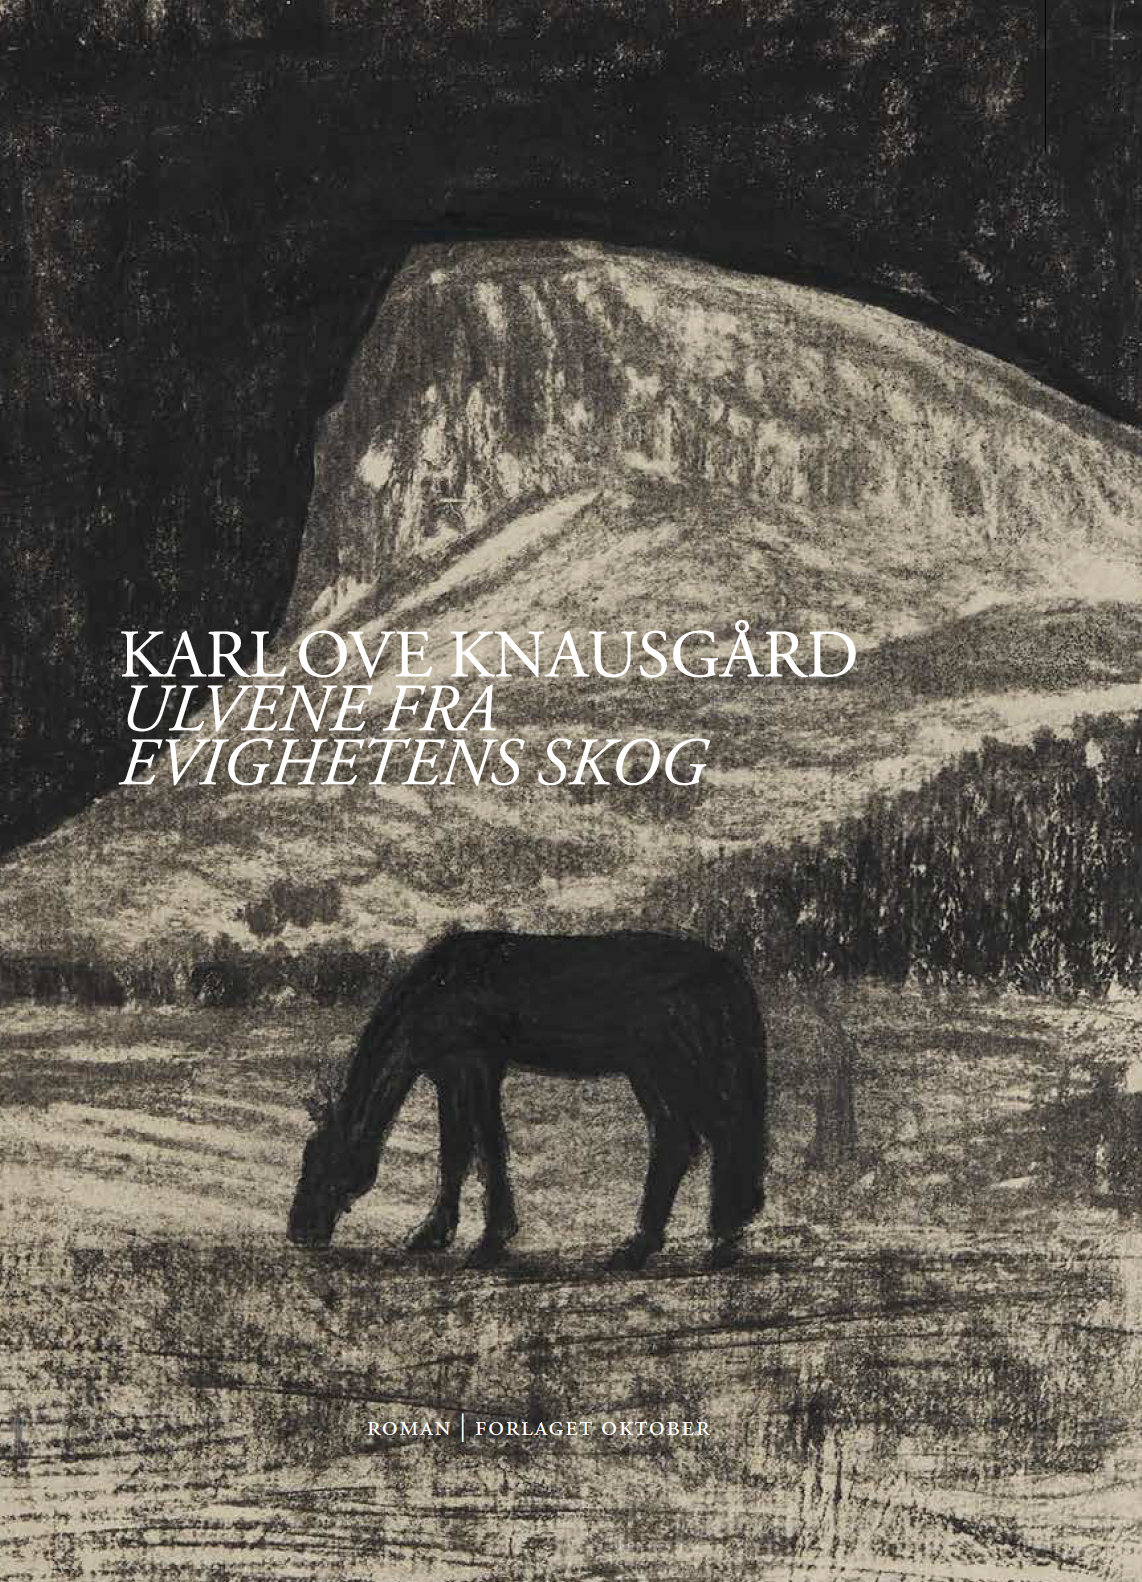 Karl Ove Knausgård. Ulvene fra evighetens skog